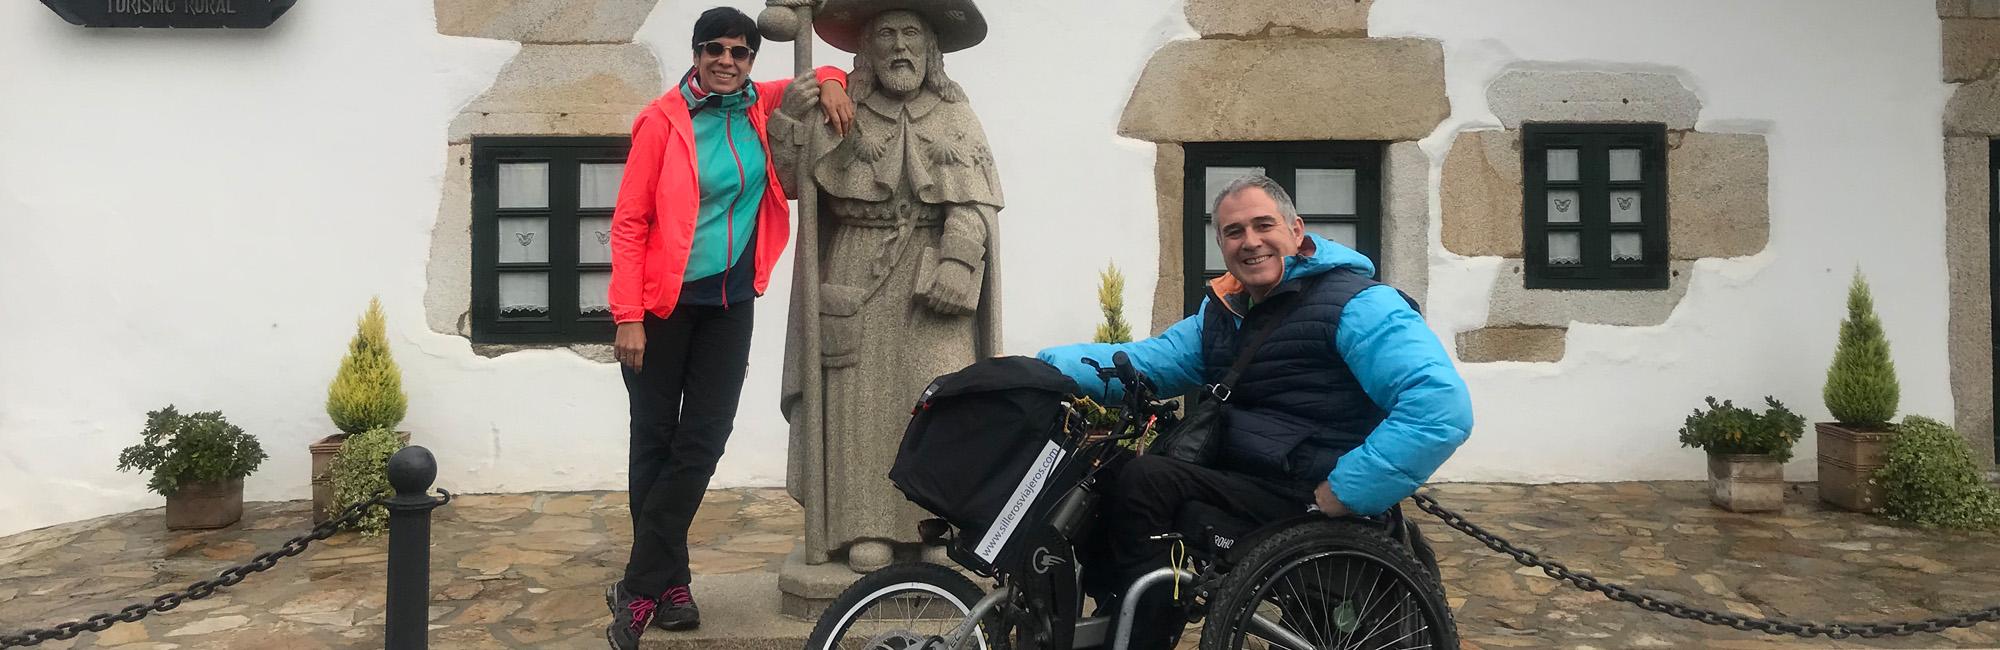 Pareja haciendo el Camino de Santiago en silla de ruedas